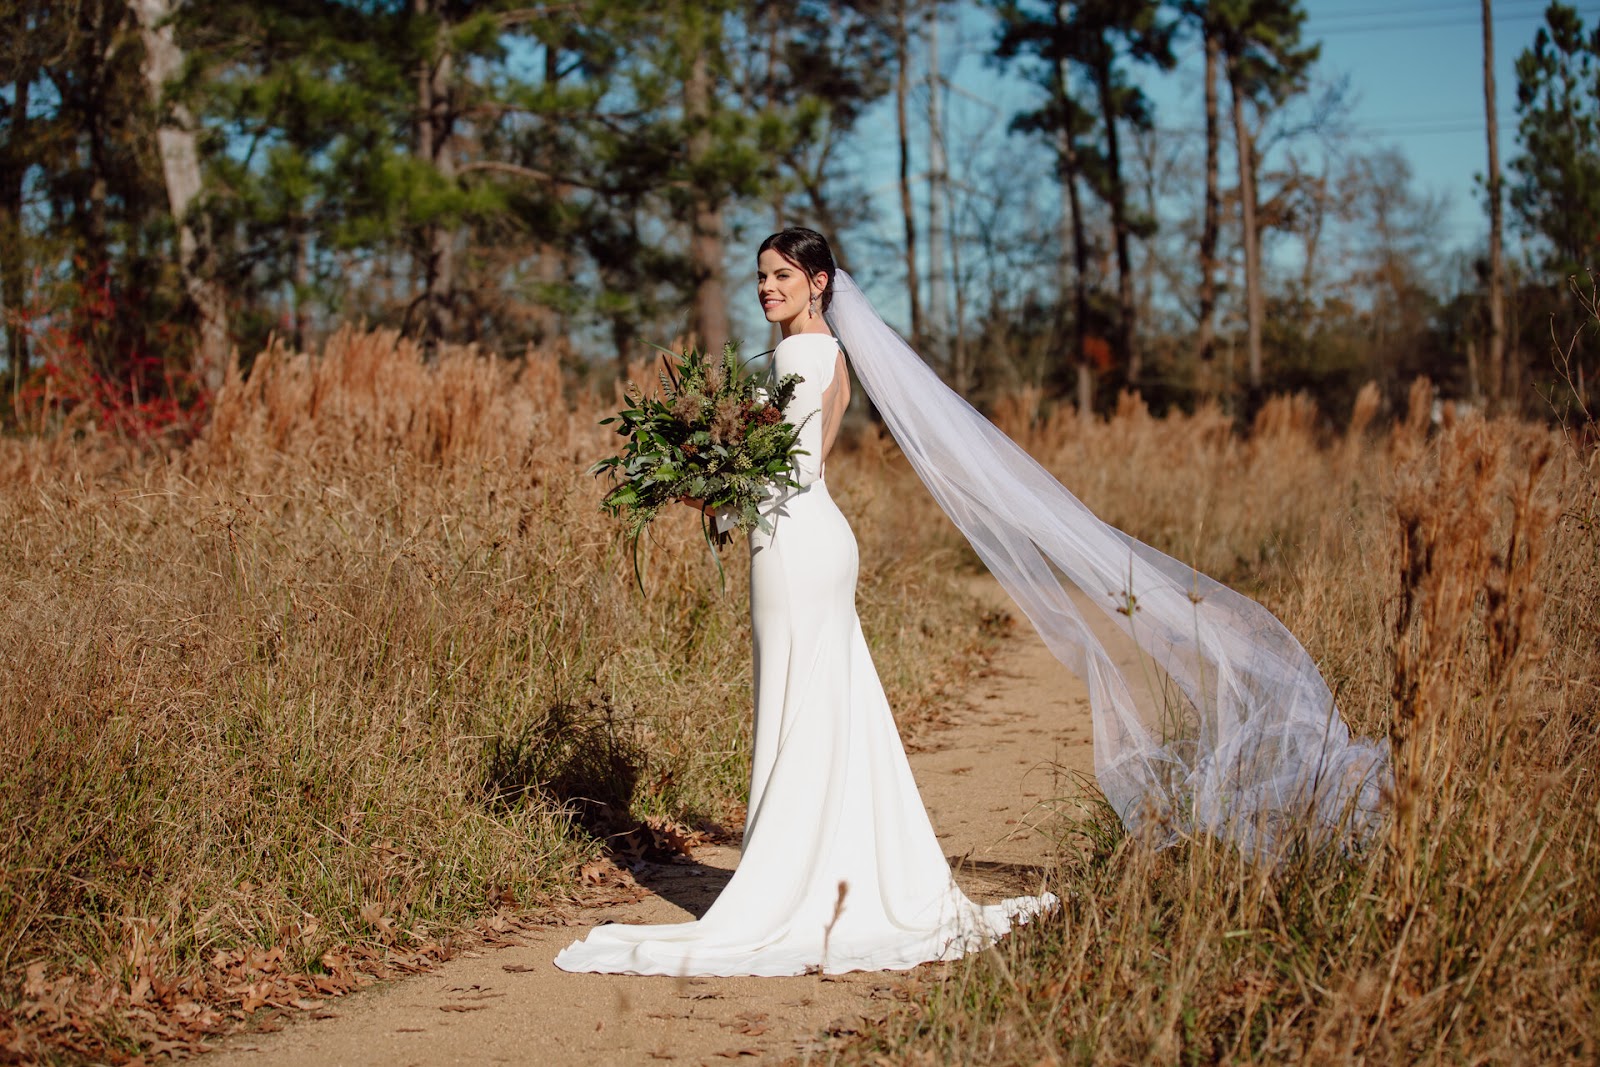 Houston Wedding Photographer Brandi Simone Photography
Houston Arboretum Bridal Photoshoot